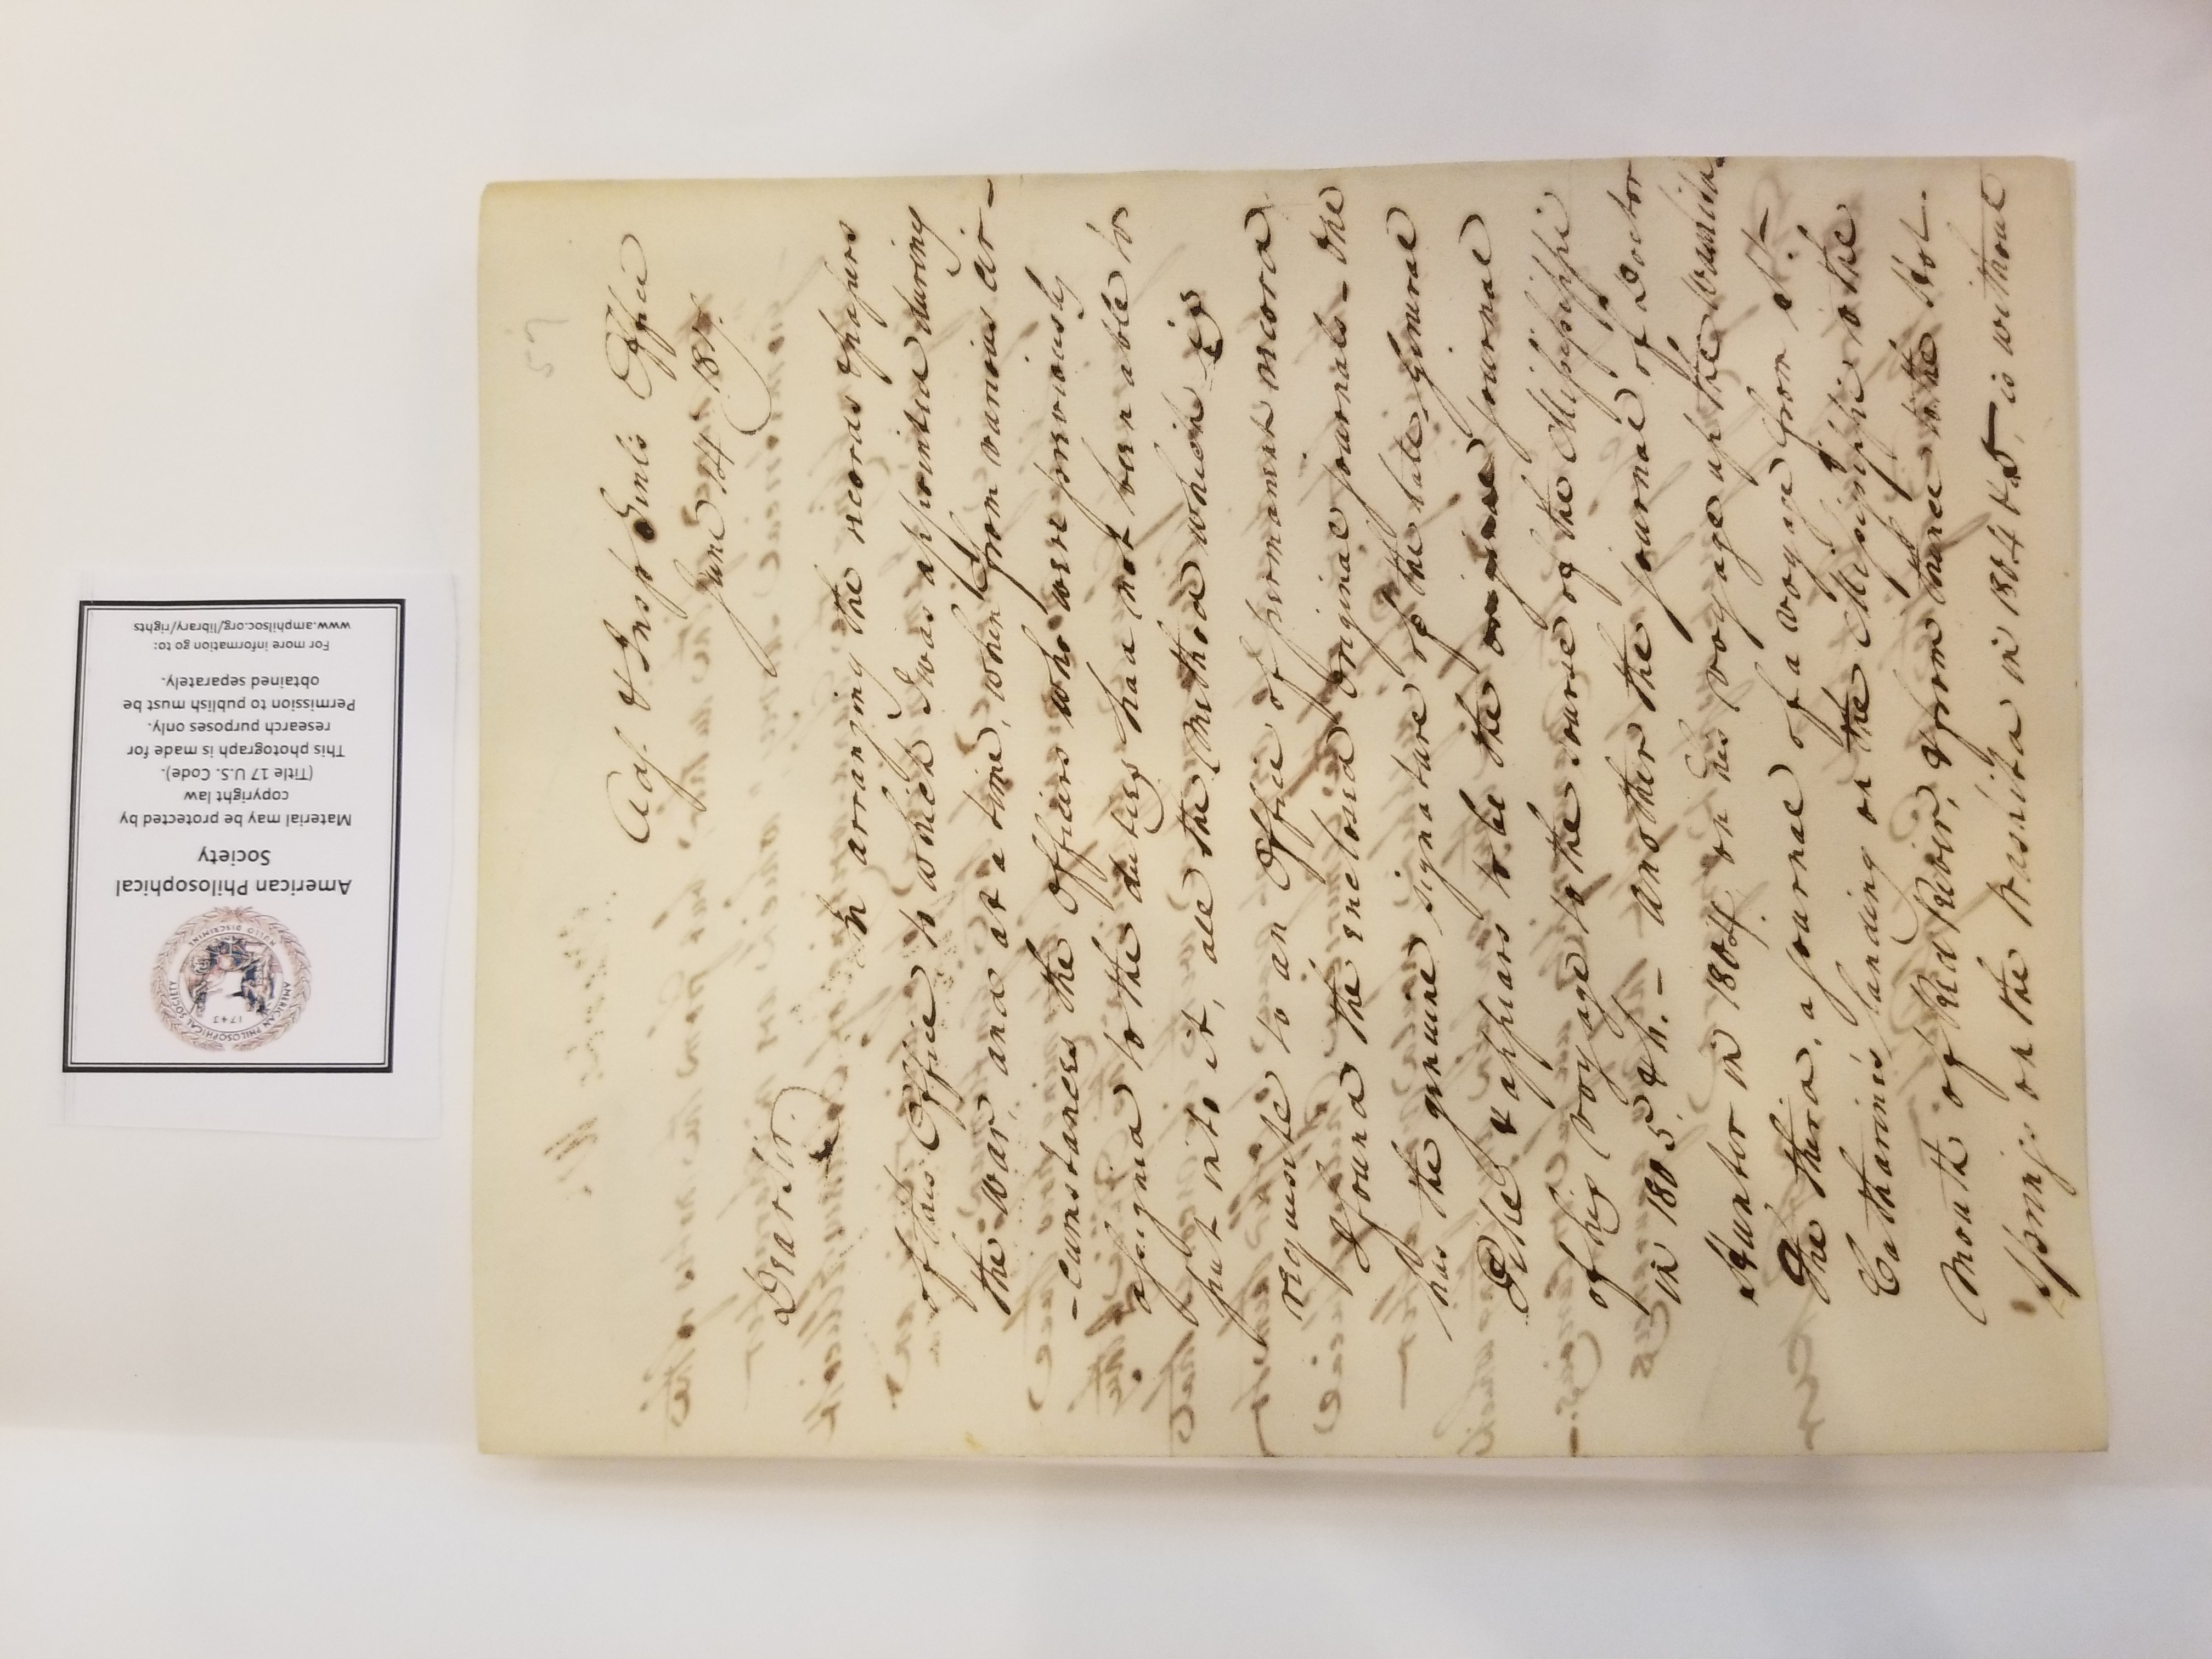 photo of manuscript letter